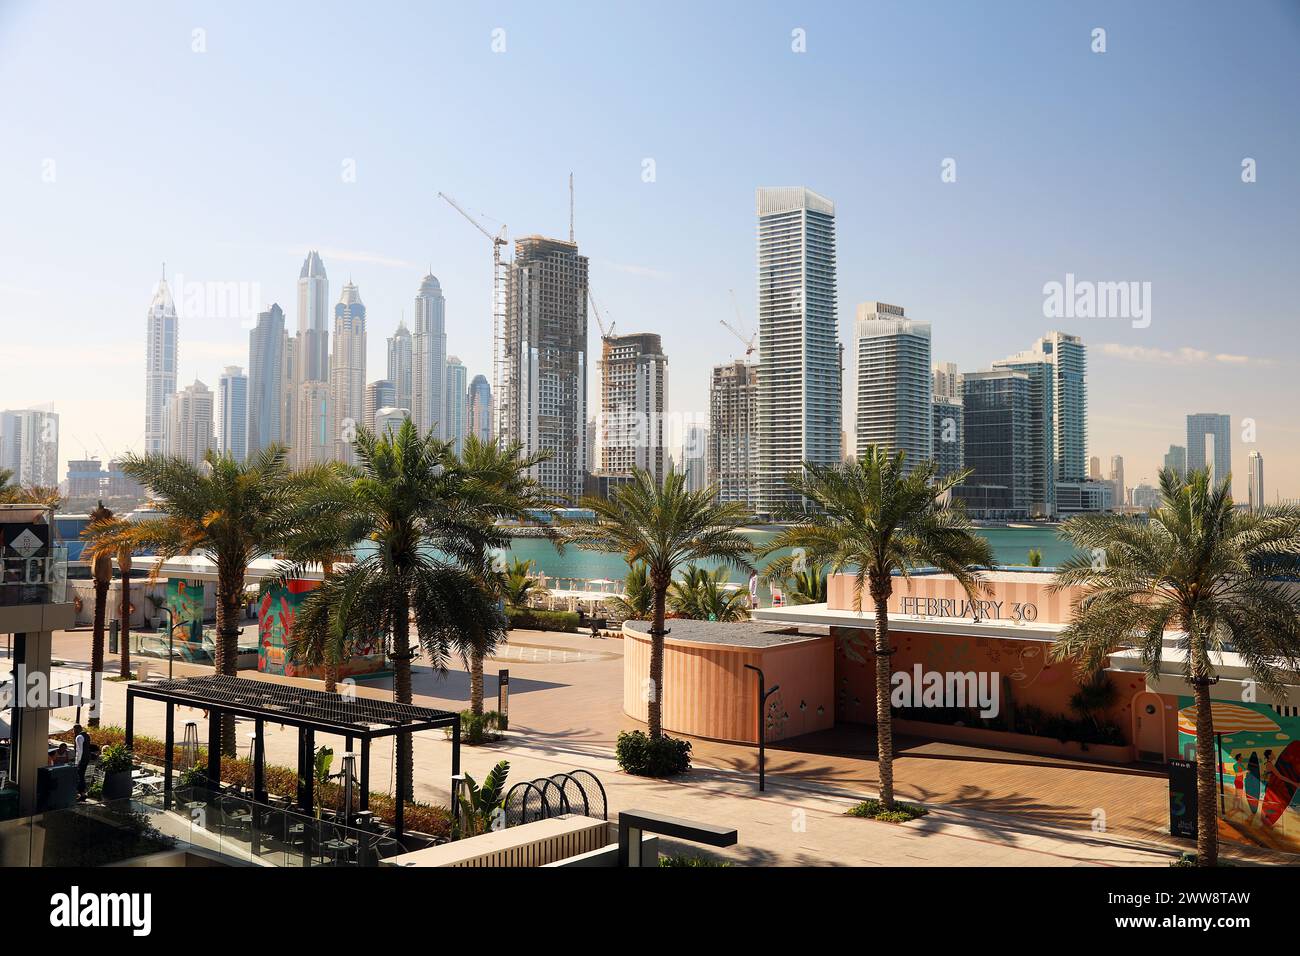 A view of Dubai Marina, Dubai, UAE Stock Photo